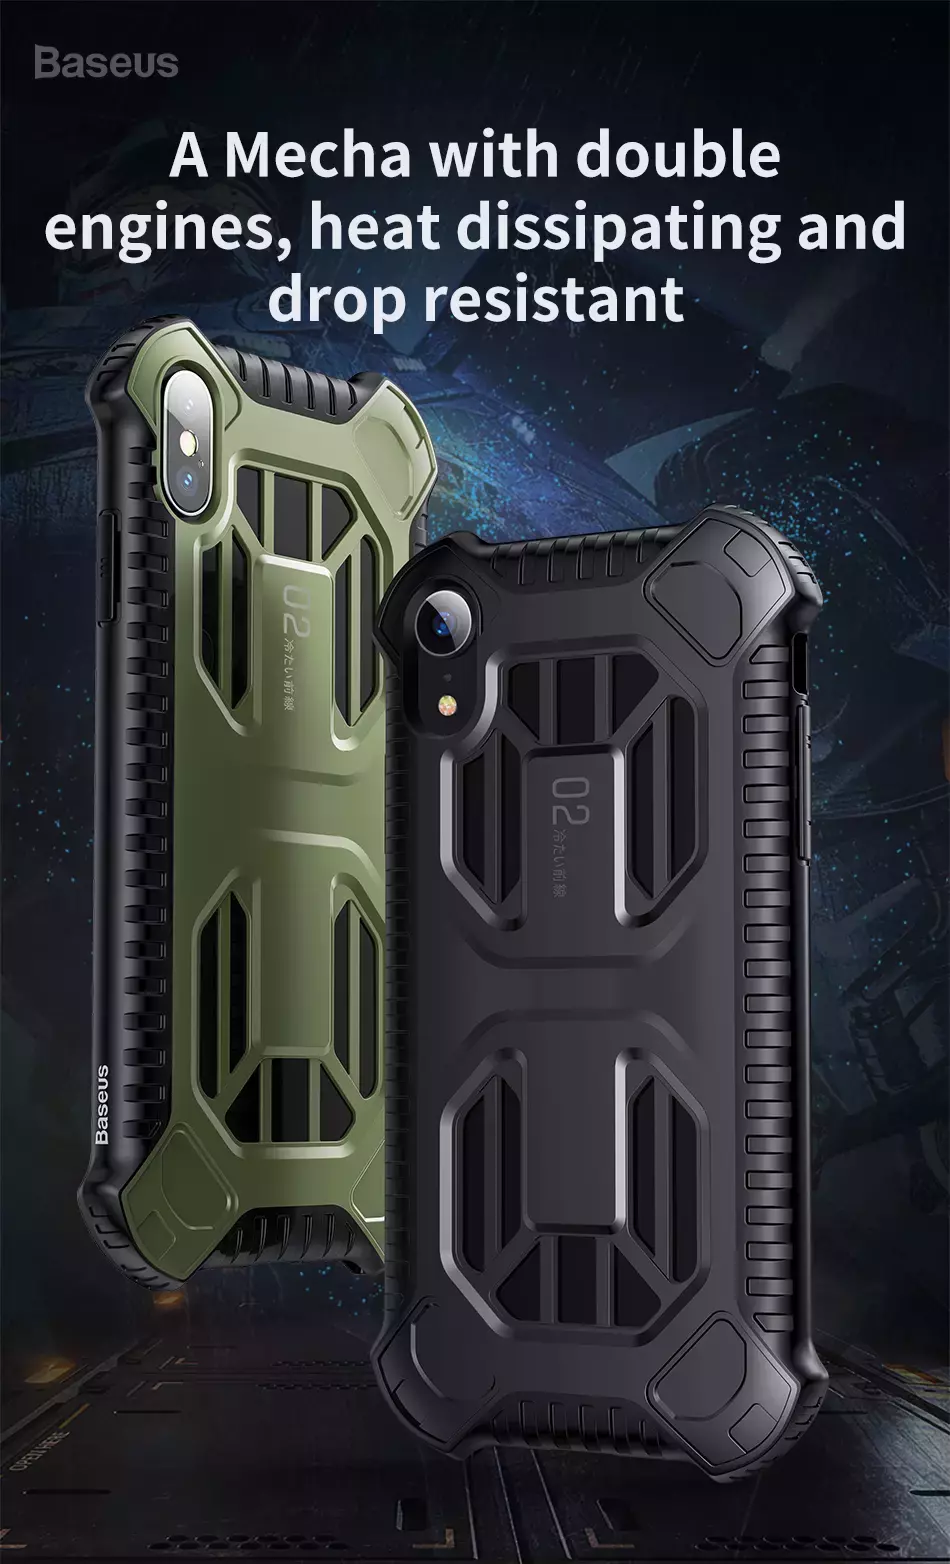 Ốp lưng tản nhiệt, siêu chống sốc chuẩn quân đội Baseus Cooling Amor Case cho iPhone XS/ XR/ XS Max